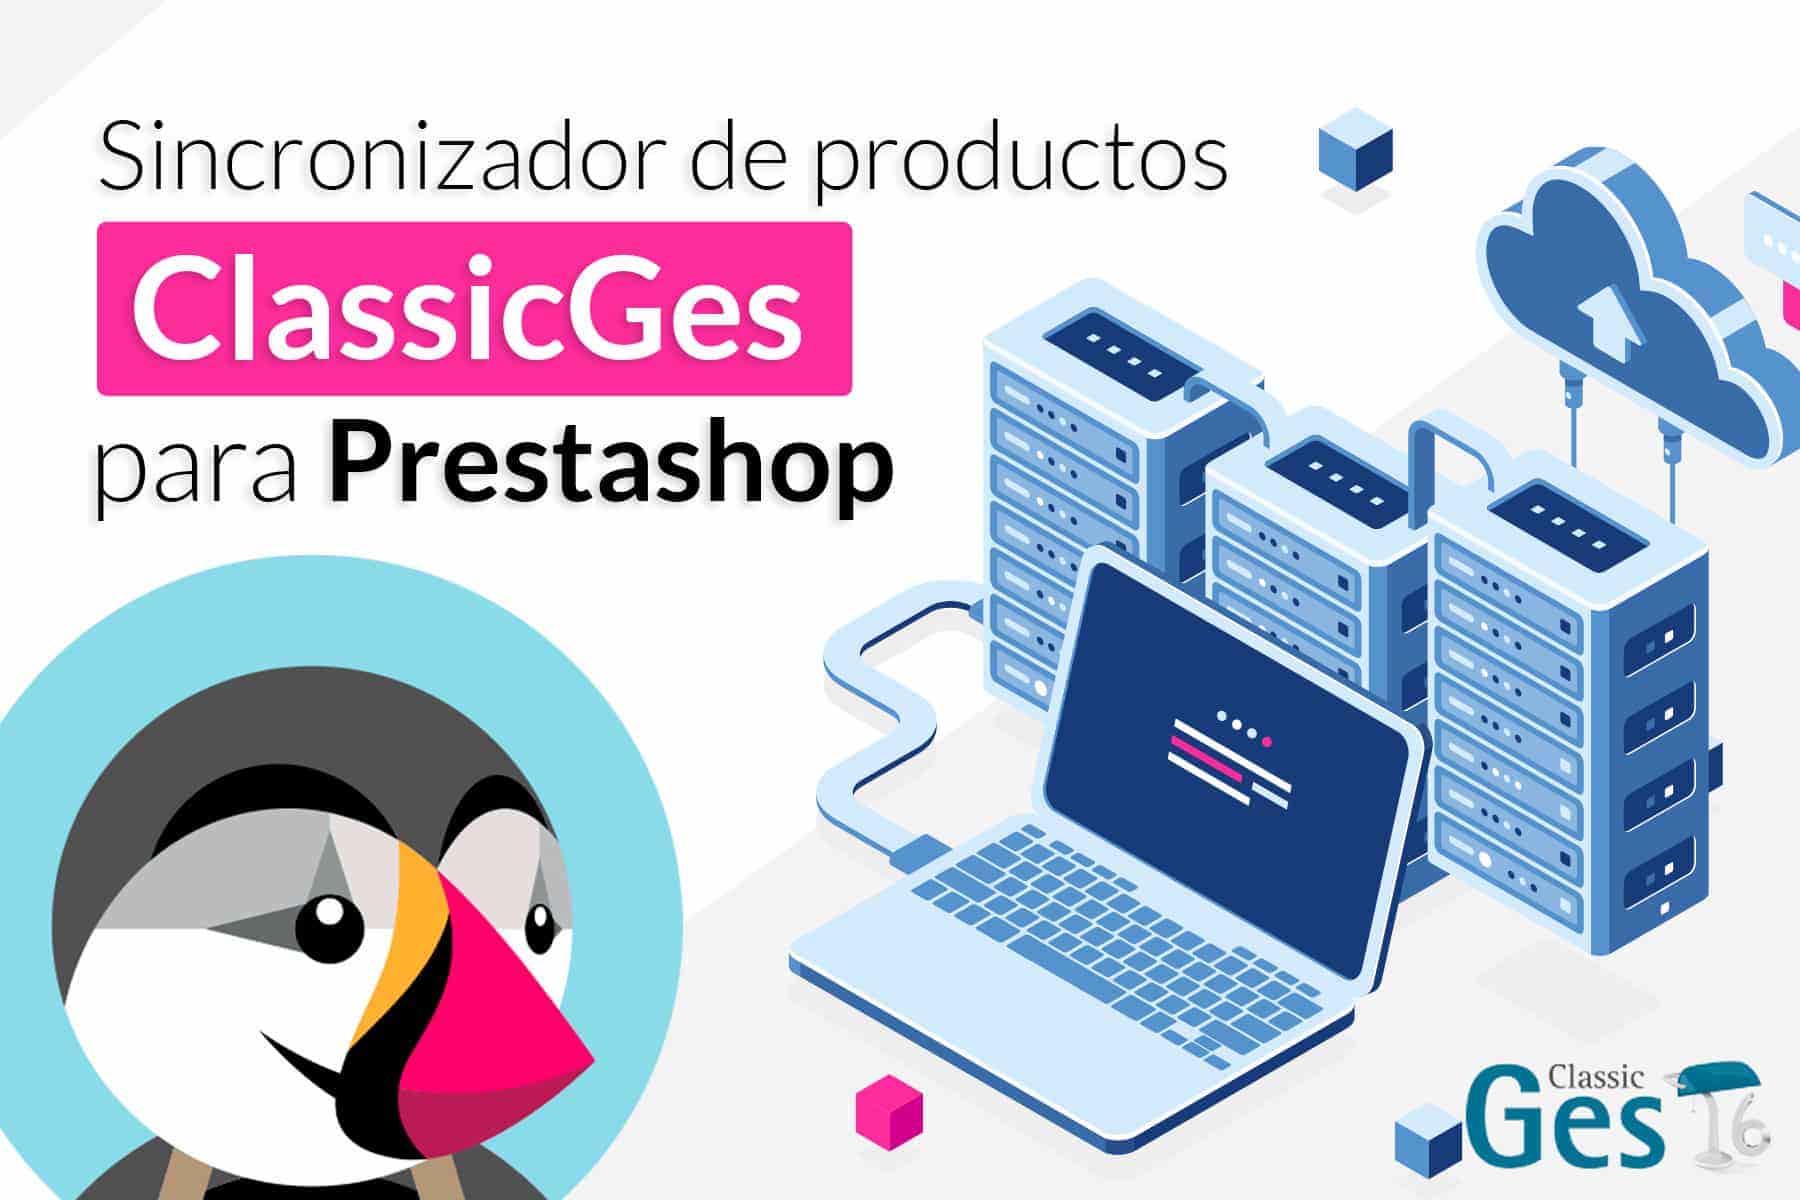 Sincronizador de productos: Classicges con PrestaShop